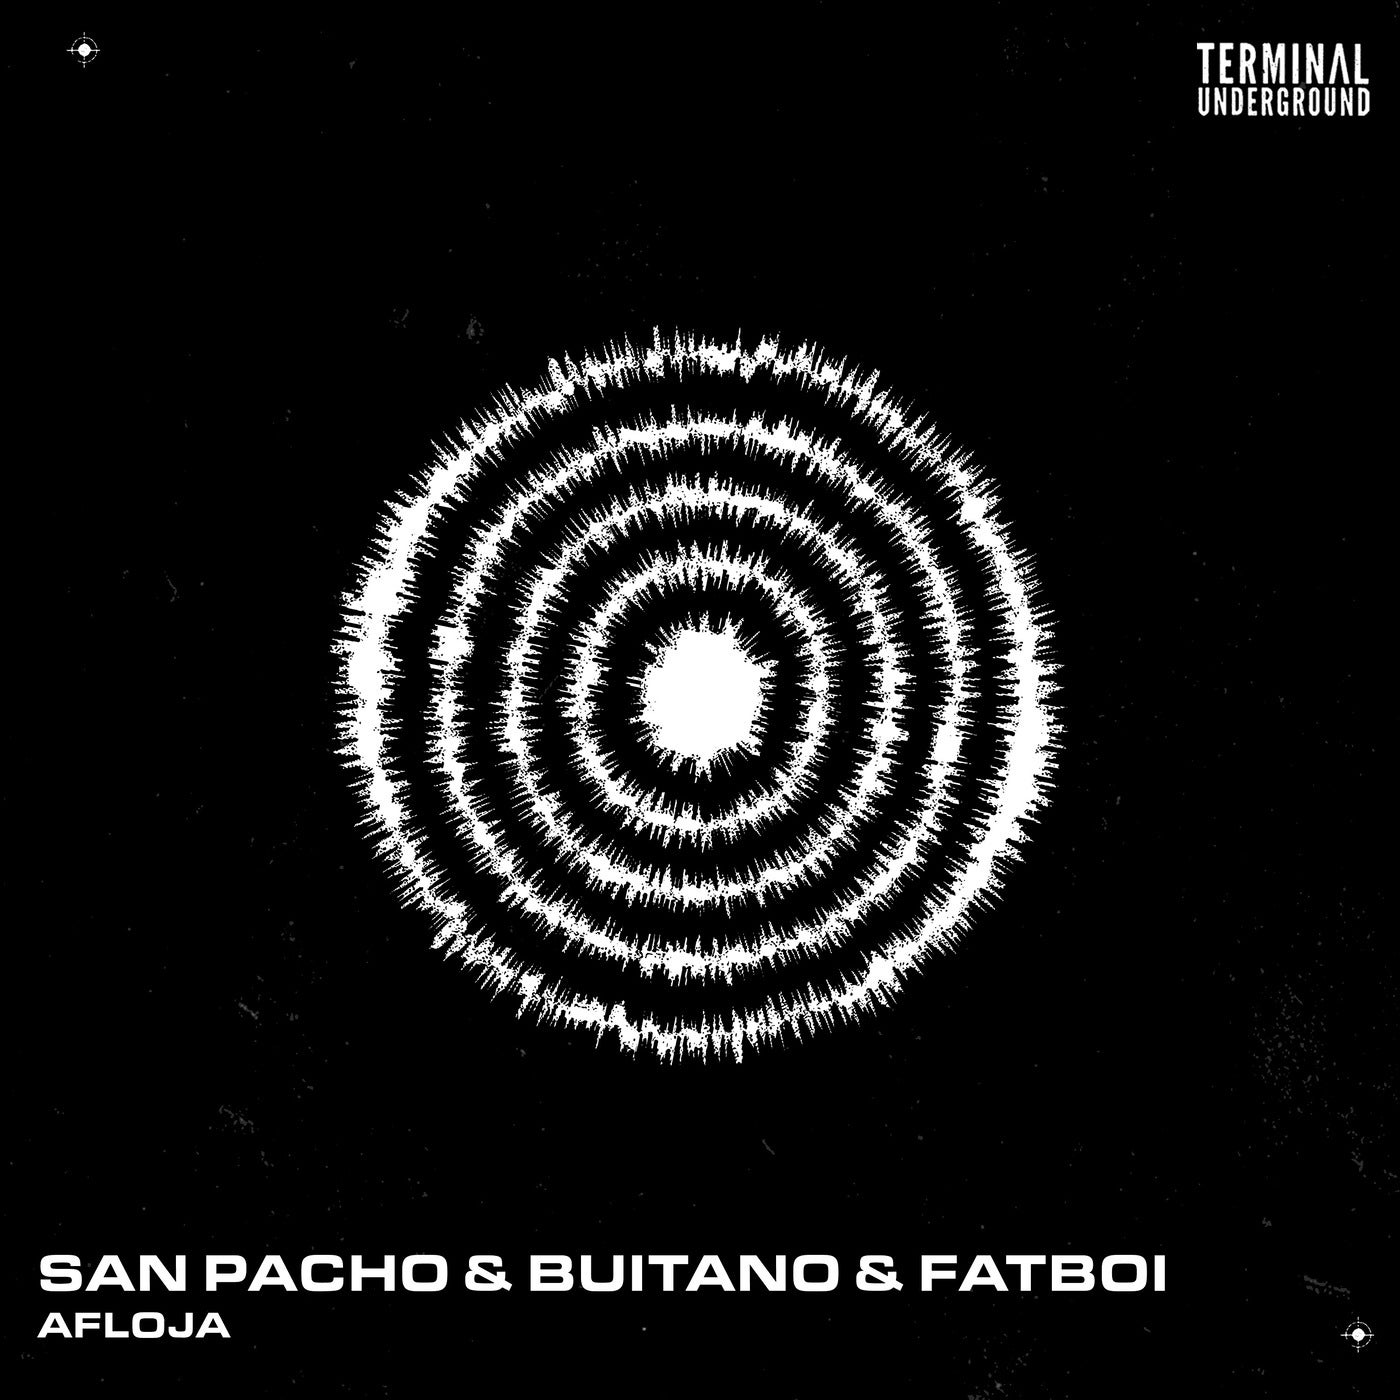 image cover: San Pacho, Buitano, Fatboi - Afloja on Terminal Underground